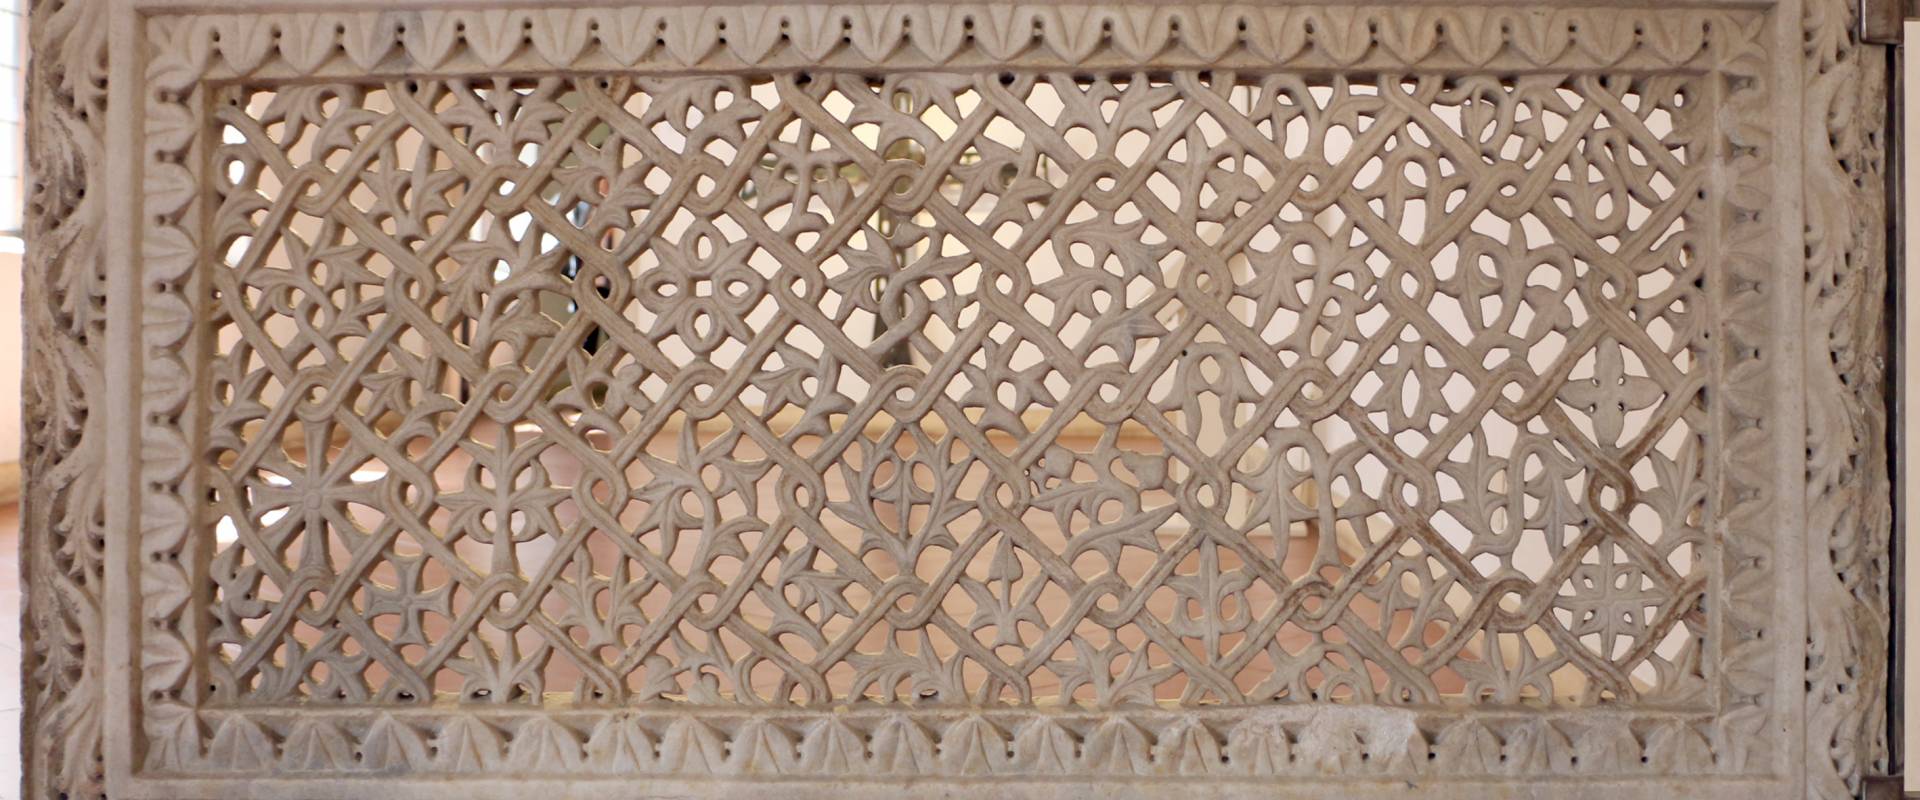 Transenna marmorea traforata, dal recinto presbiteriale di san vitale, VI secolo 04 foto di Sailko